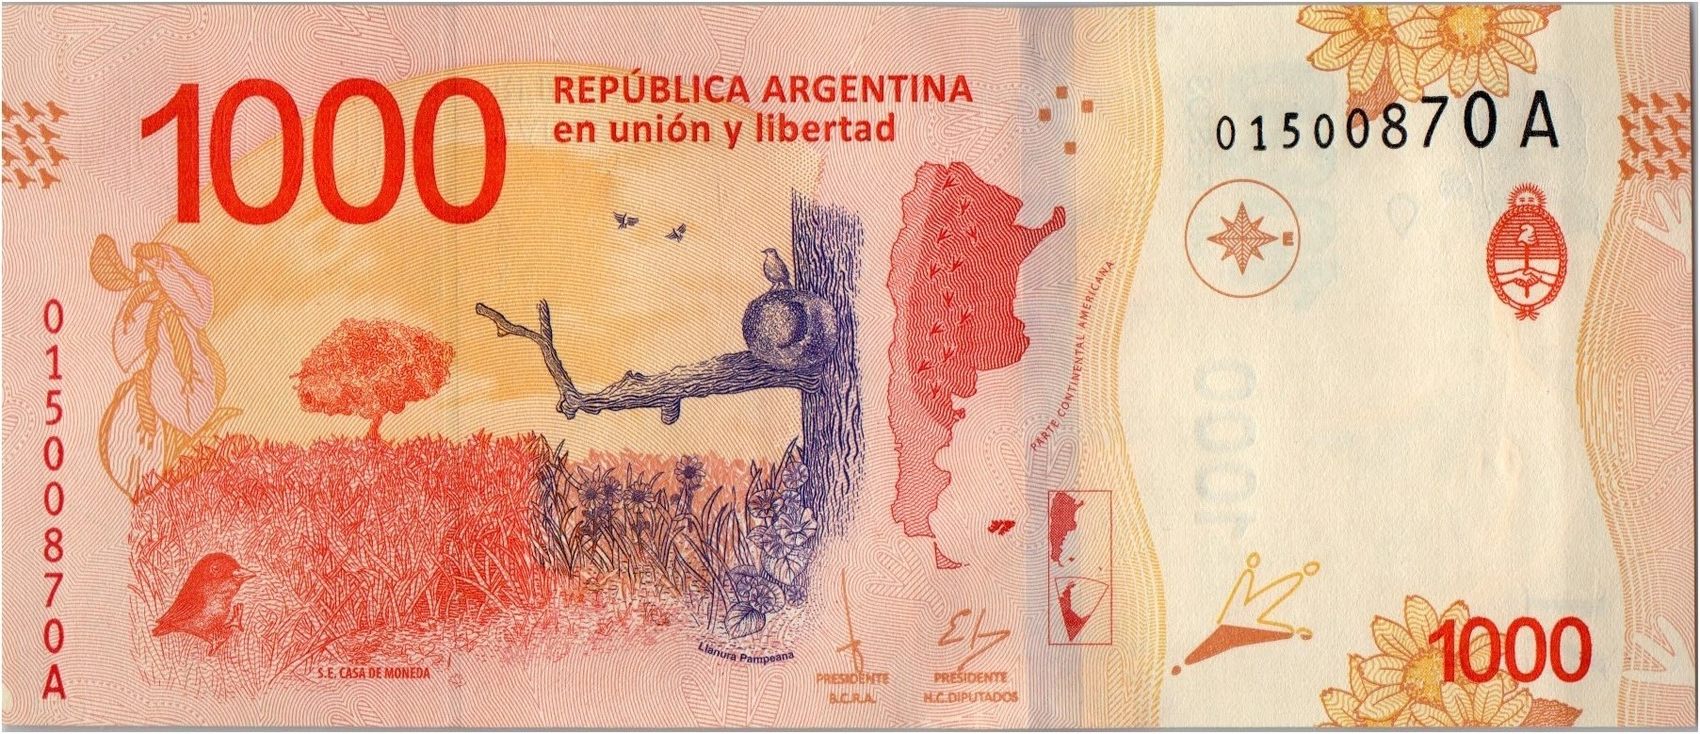 1000 2017 года. Банкнота 1000 песо Аргентина. Купюра Аргентина 1000 песо. Банкноты Аргентины 1000. Аргентинское песо валюта.